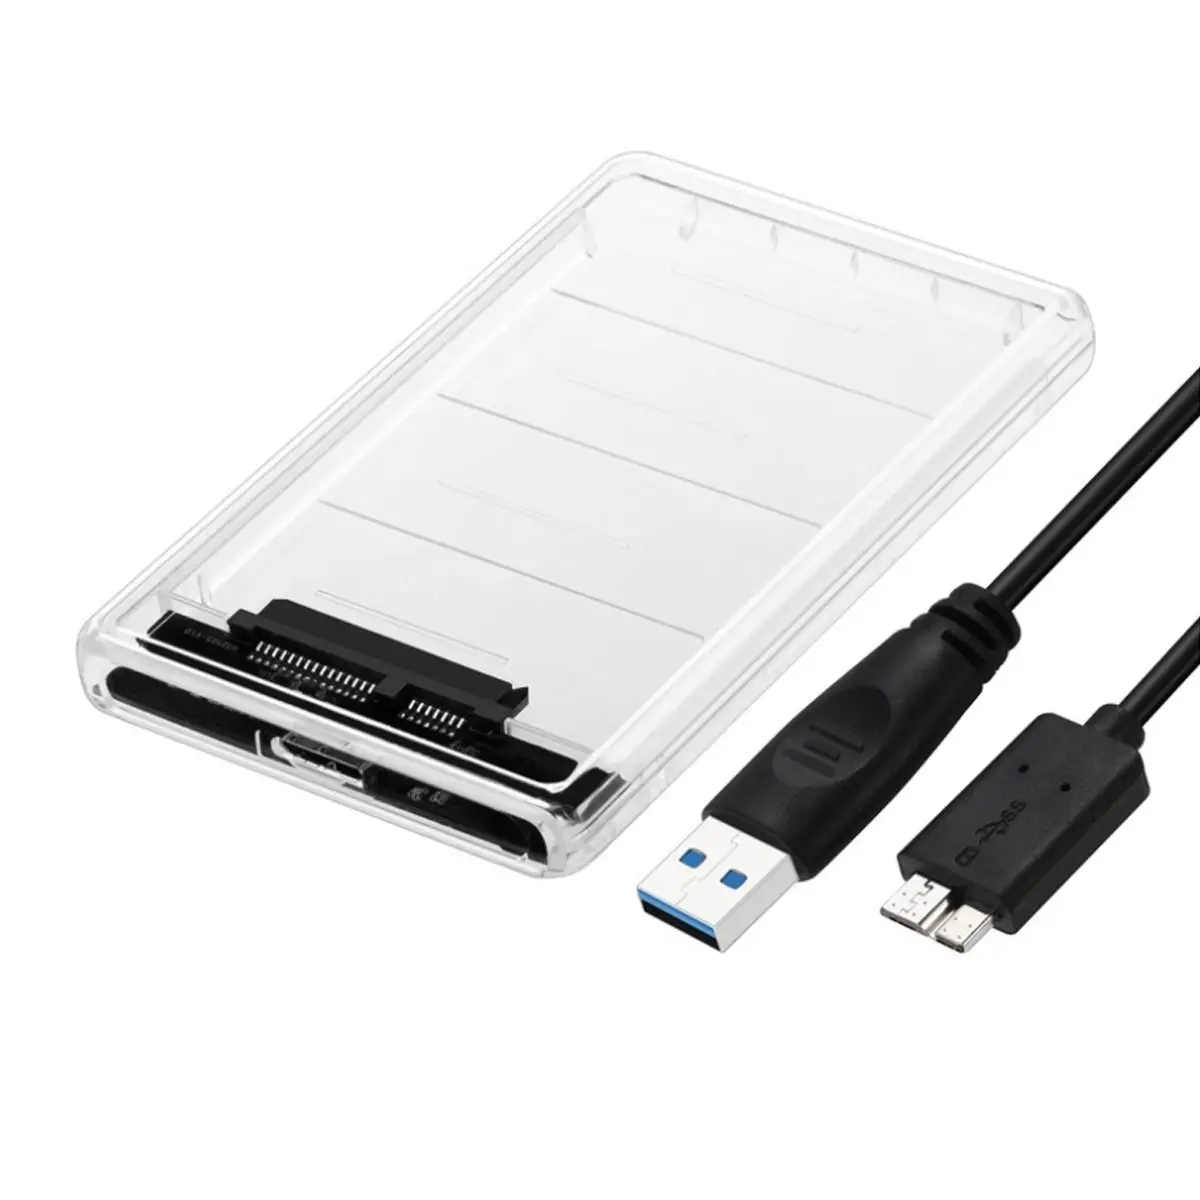 공장 가격 hdd 인클로저 usb 3.0 2.5 인치 외장형 하드 드라이브 디스크 케이스 박스 인클로저 케이스 7mm-9.5mm SATA HDD SSD